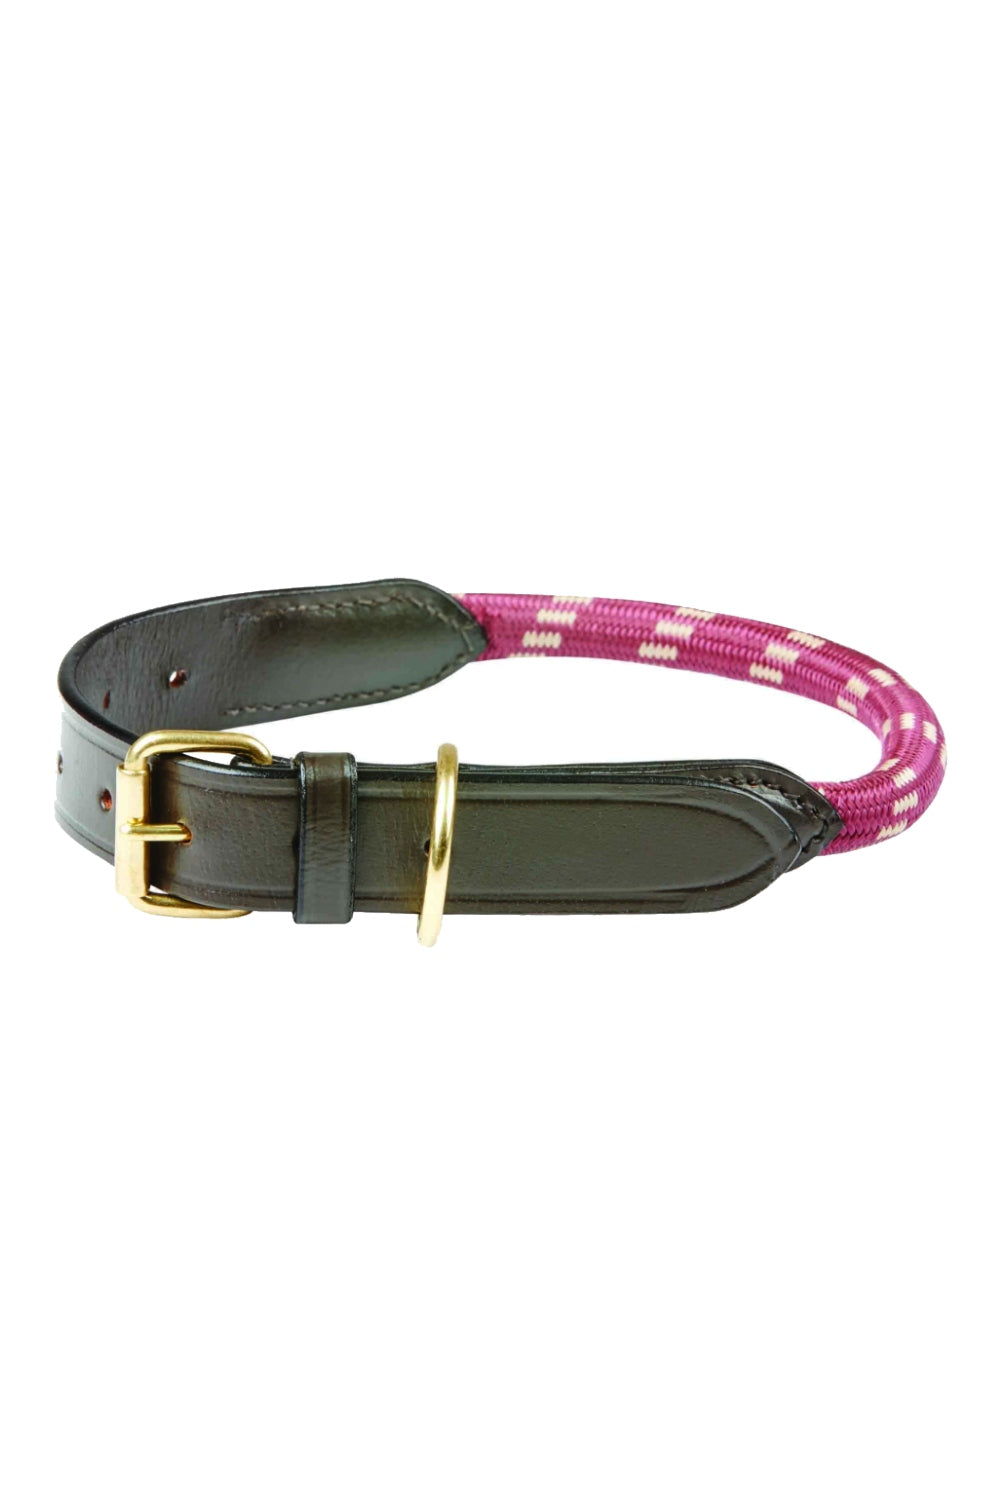 WeatherBeeta Rope Leather Dog Collar in Burgundy/Brown 